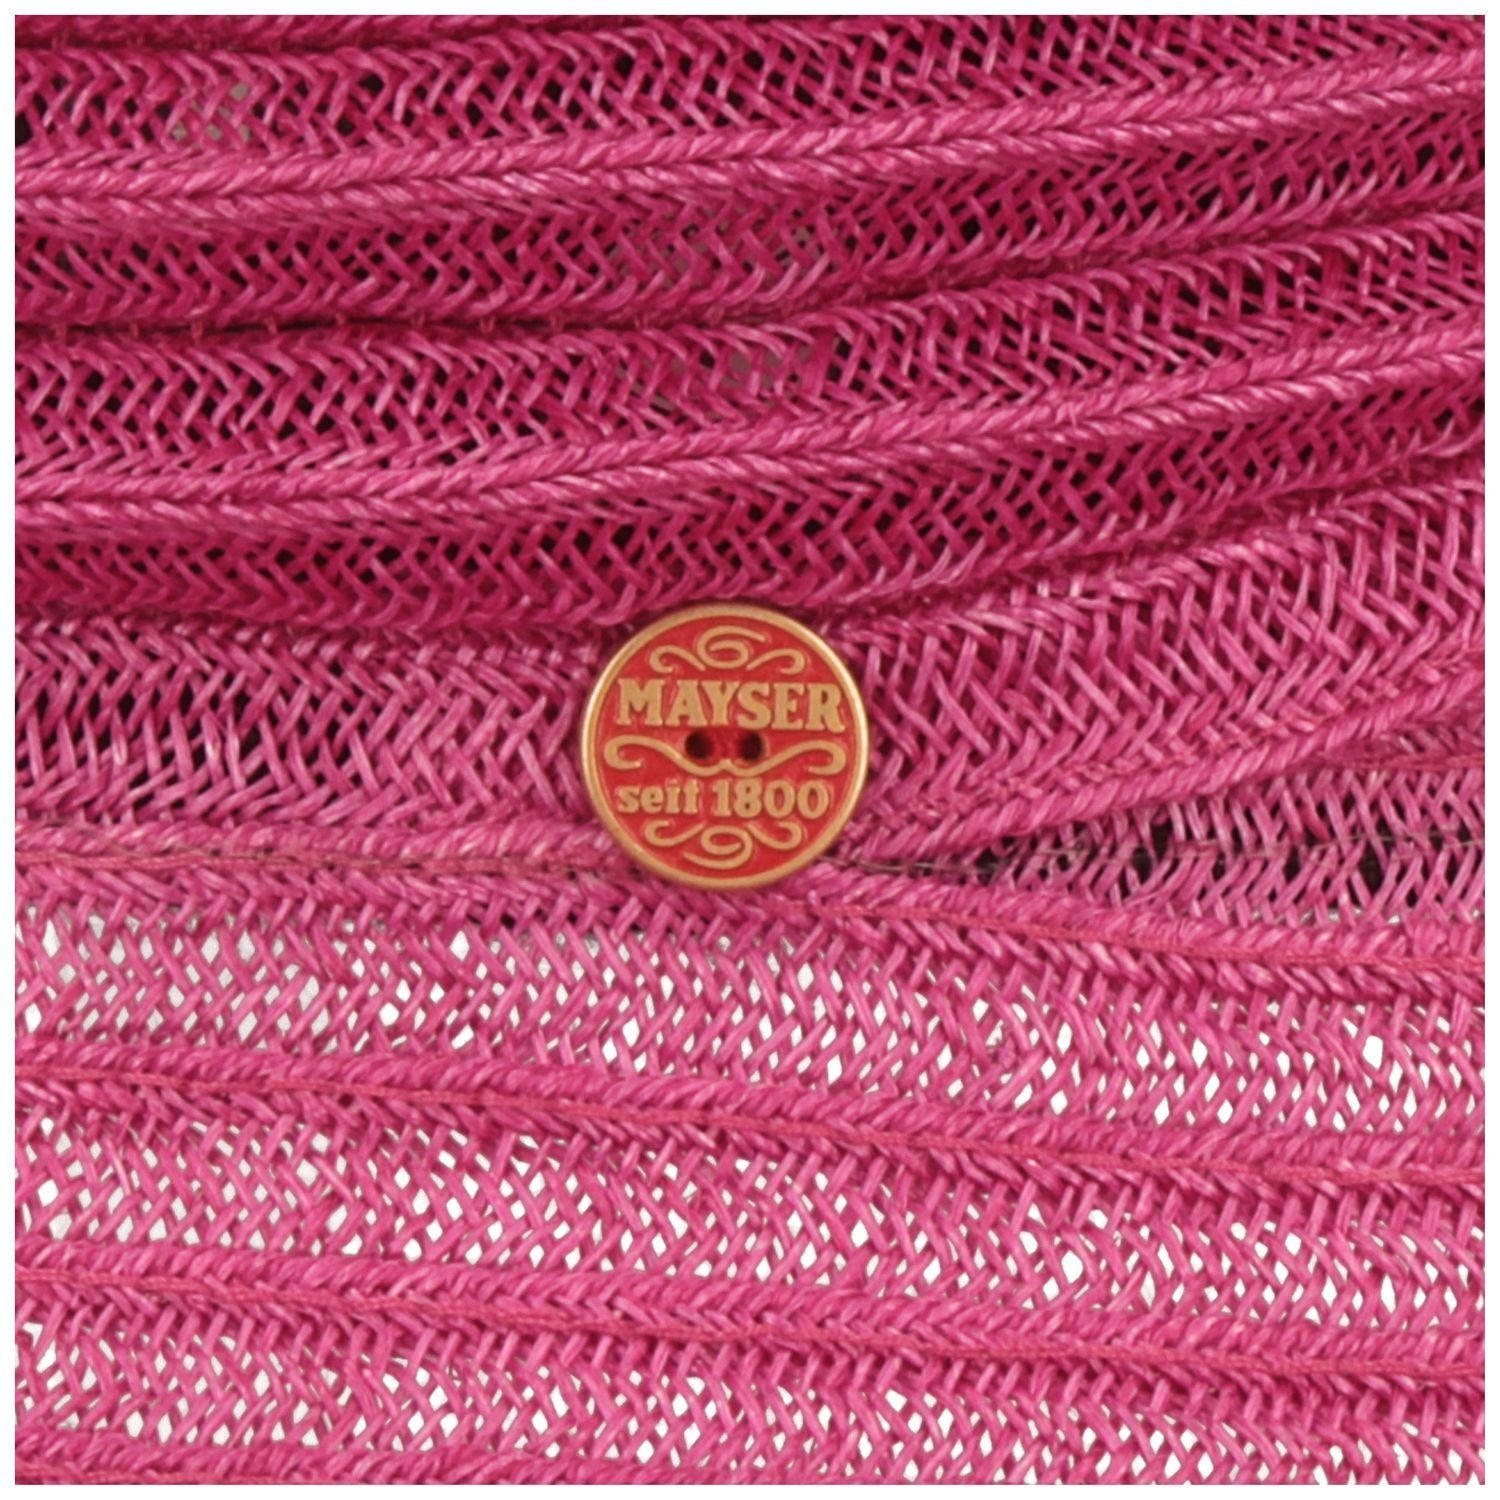 aus Mayser Bortenhut 9010 Hanf faltbarer pink knautschbarer Strohhut & Bella